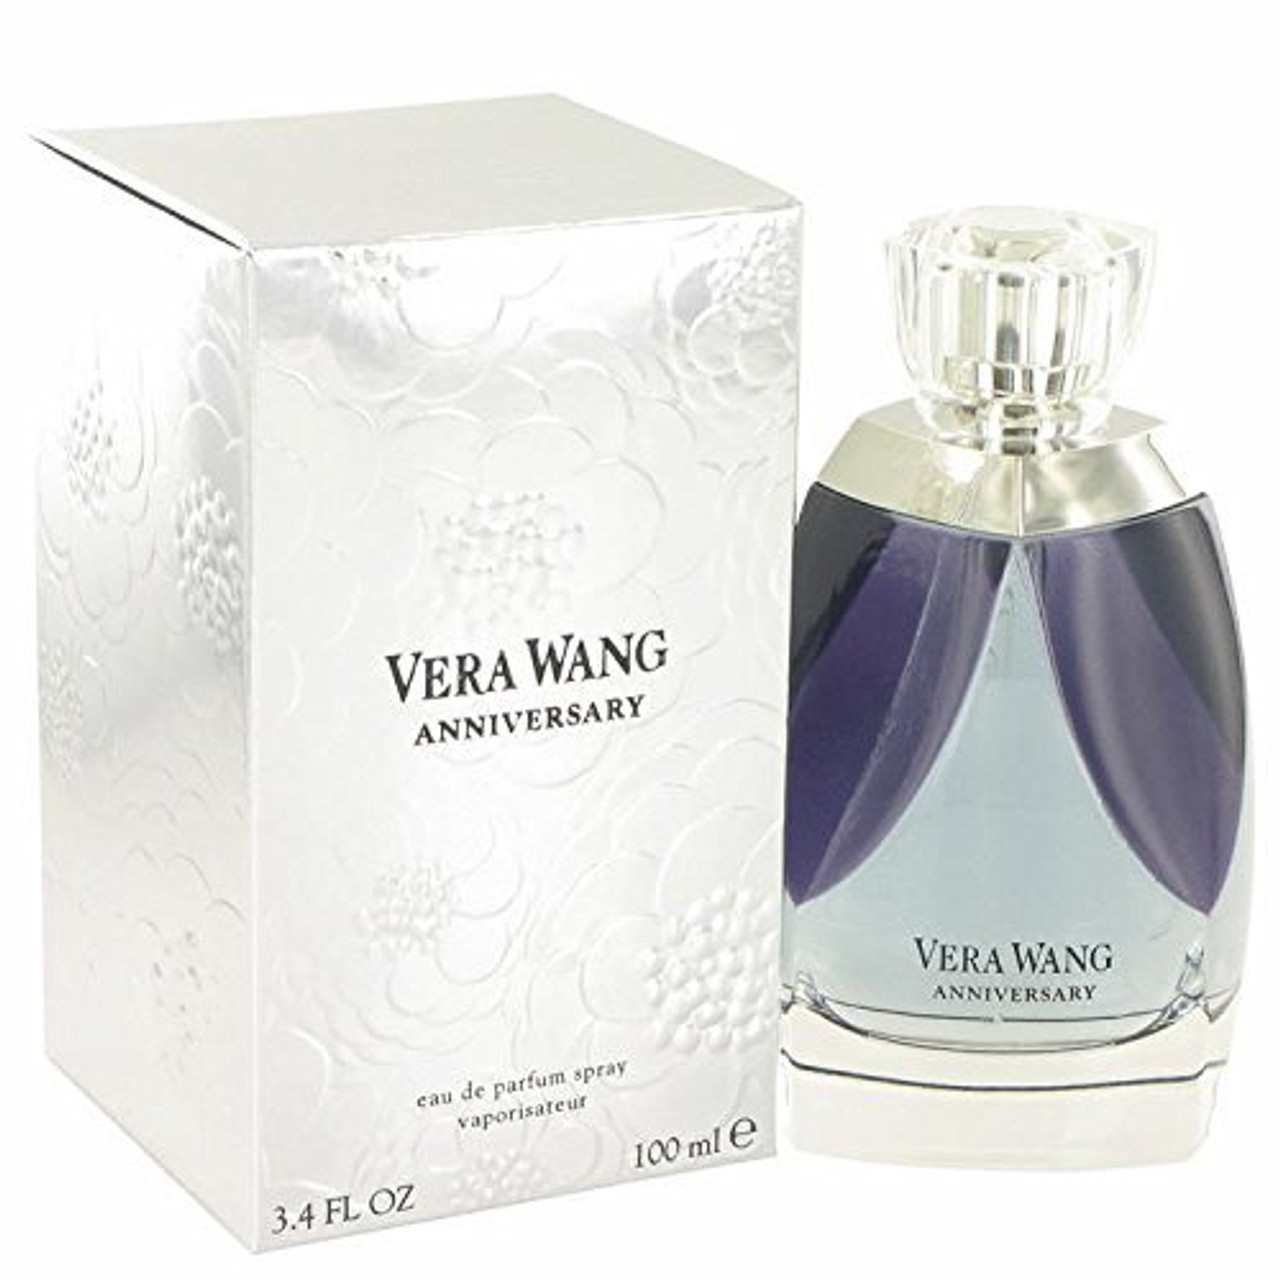 Vera Wang Perfume By Vera Wang for Women